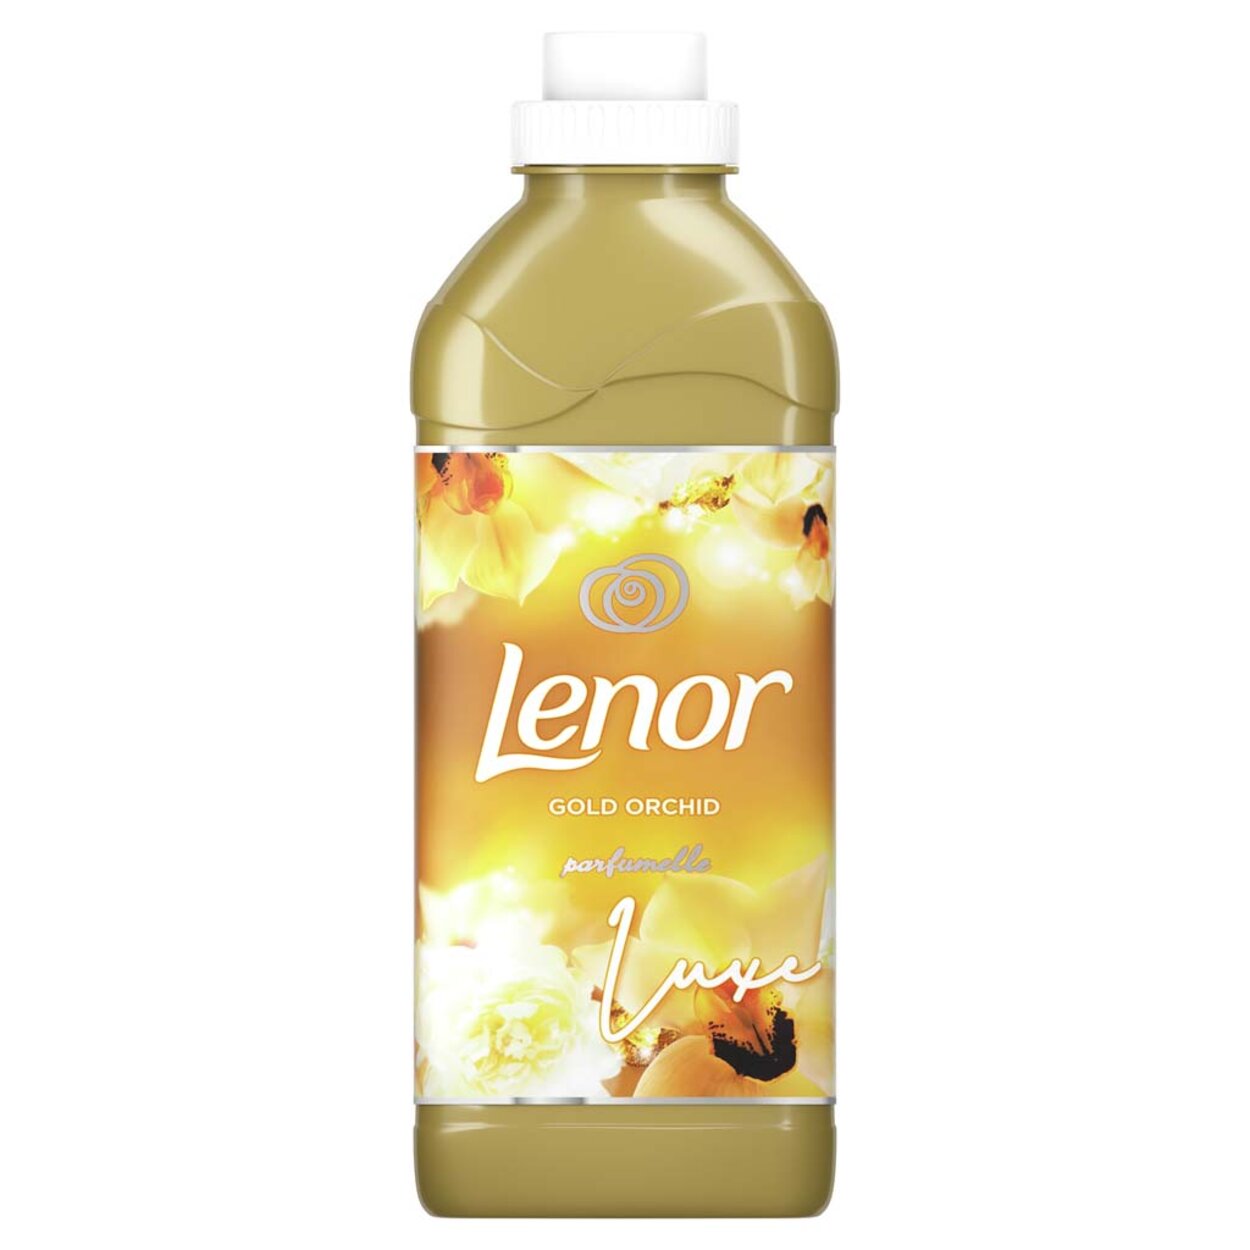 LENOR Gold Orchid aviváž 750 ml (25 praní) | Predeti.sk